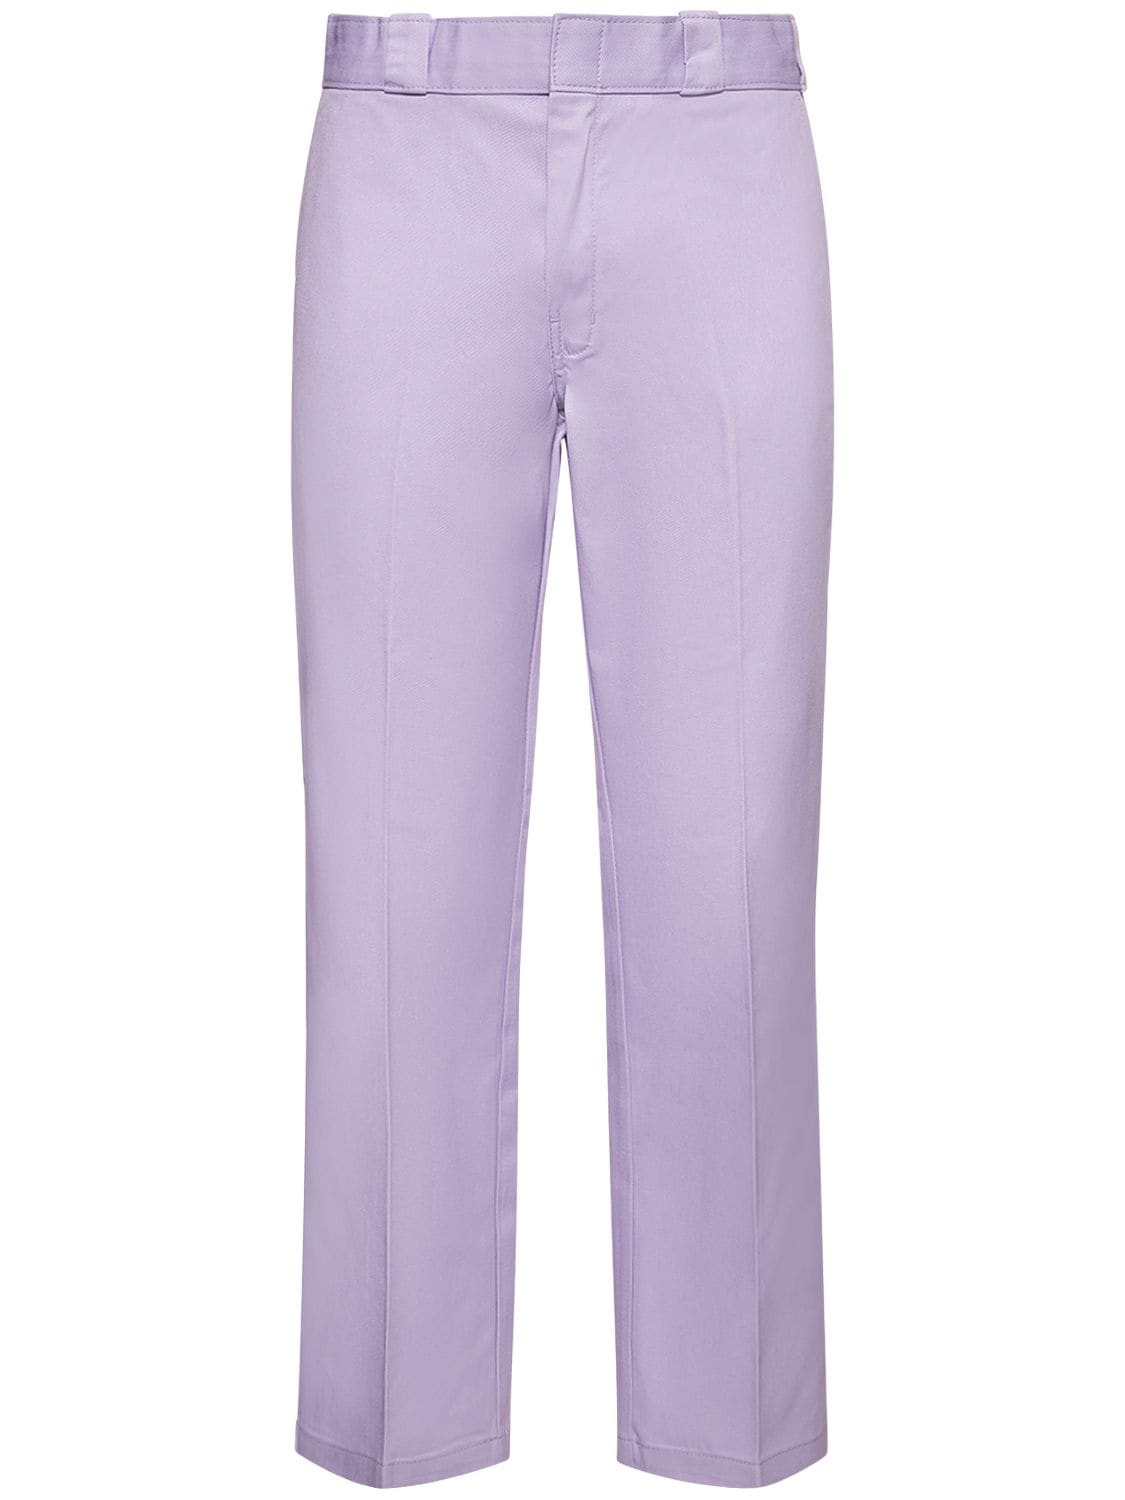 Dickies 874工装裤 In Purple Rose